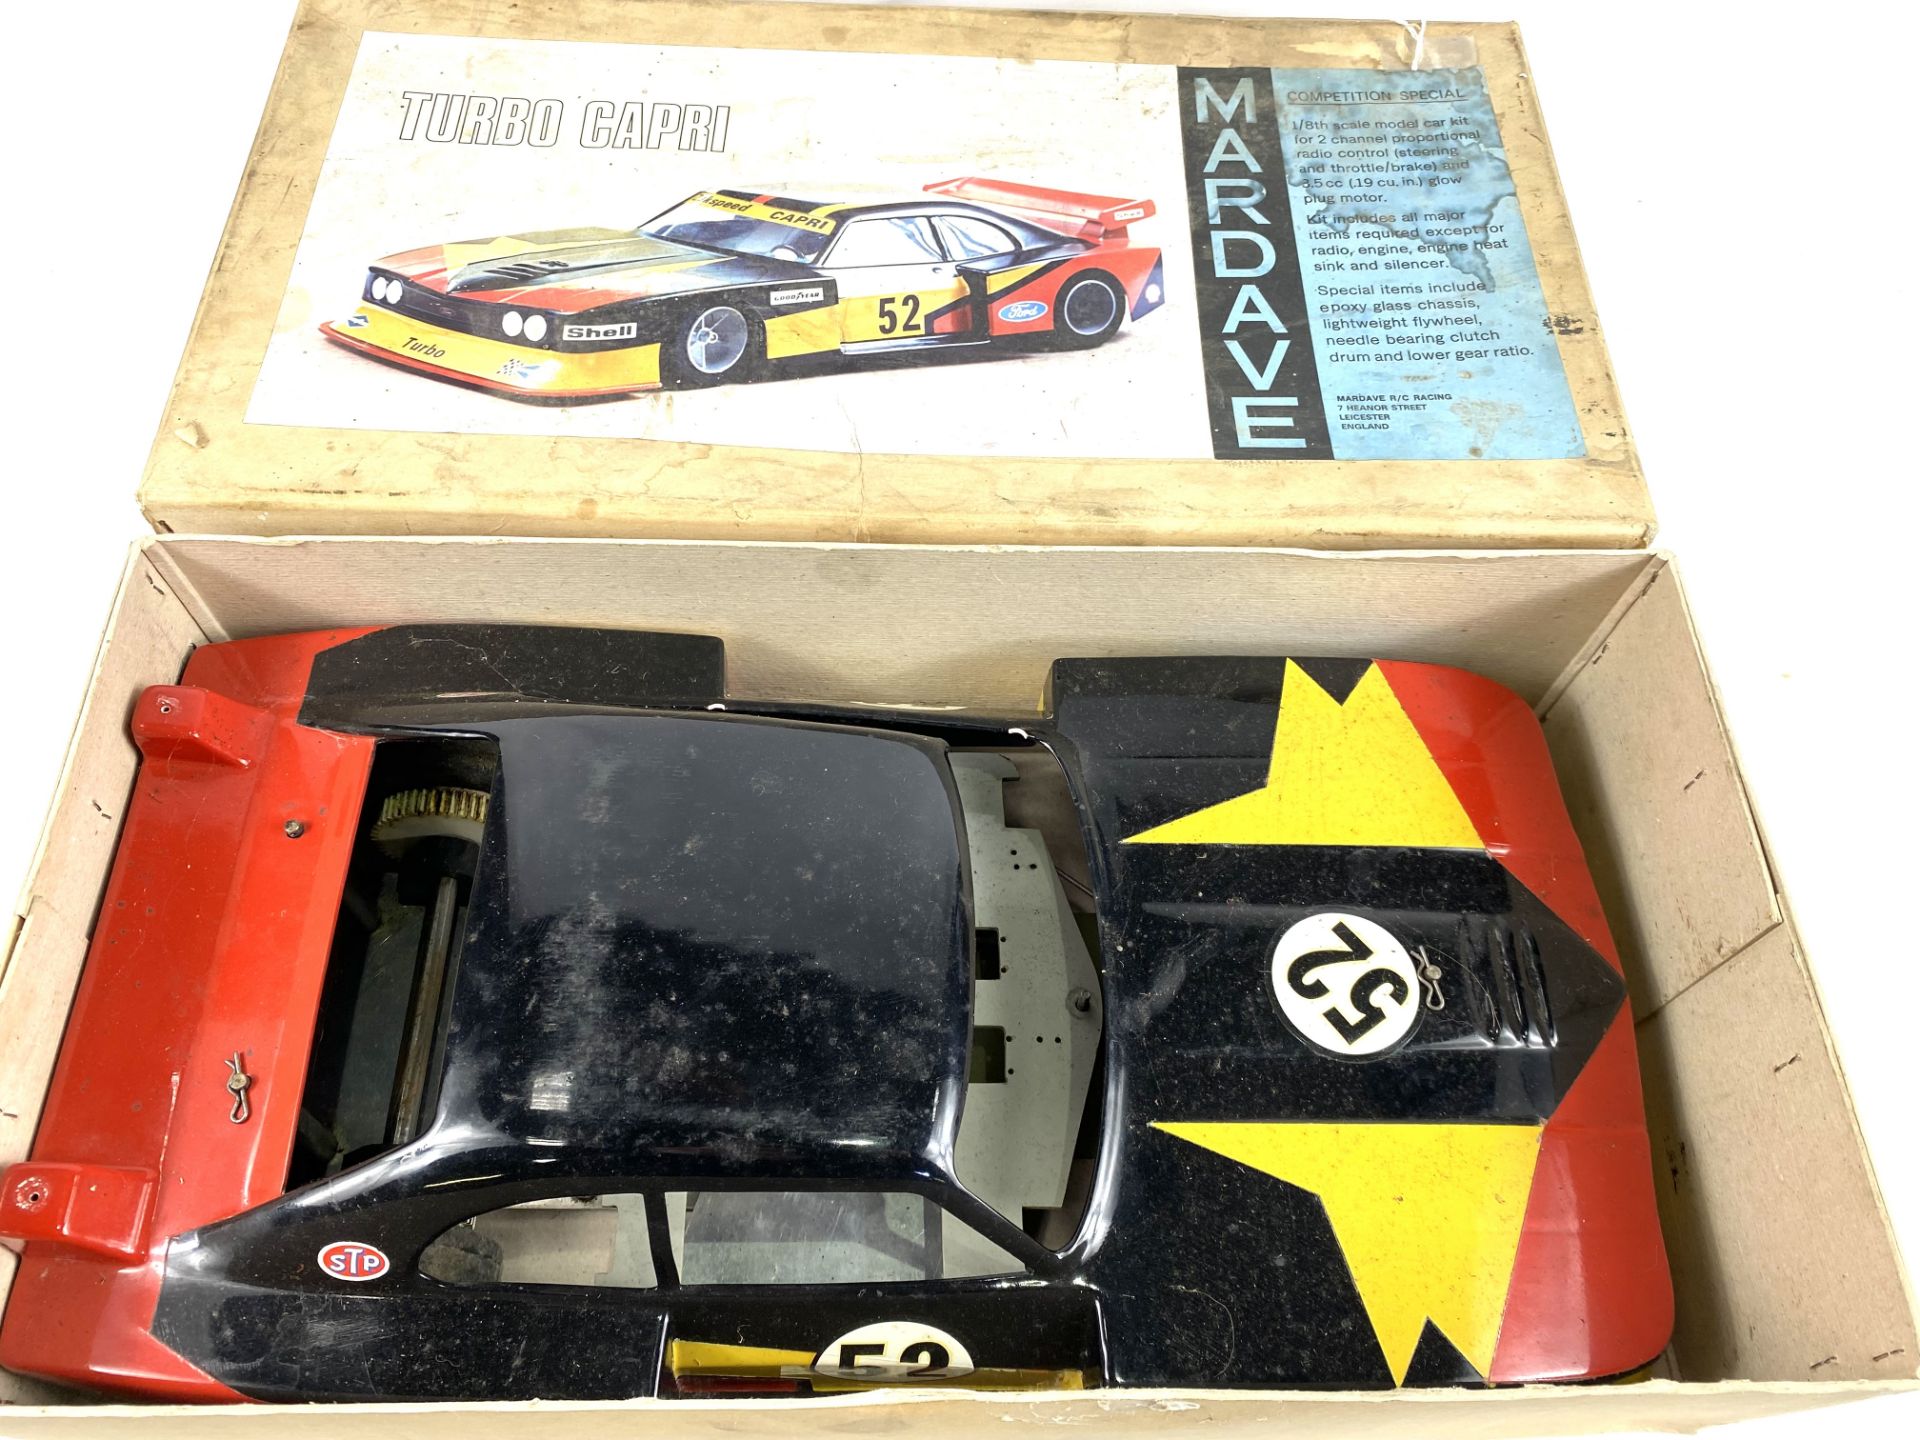 Mardave 1:8 scale model turbo capri model car shell in original box